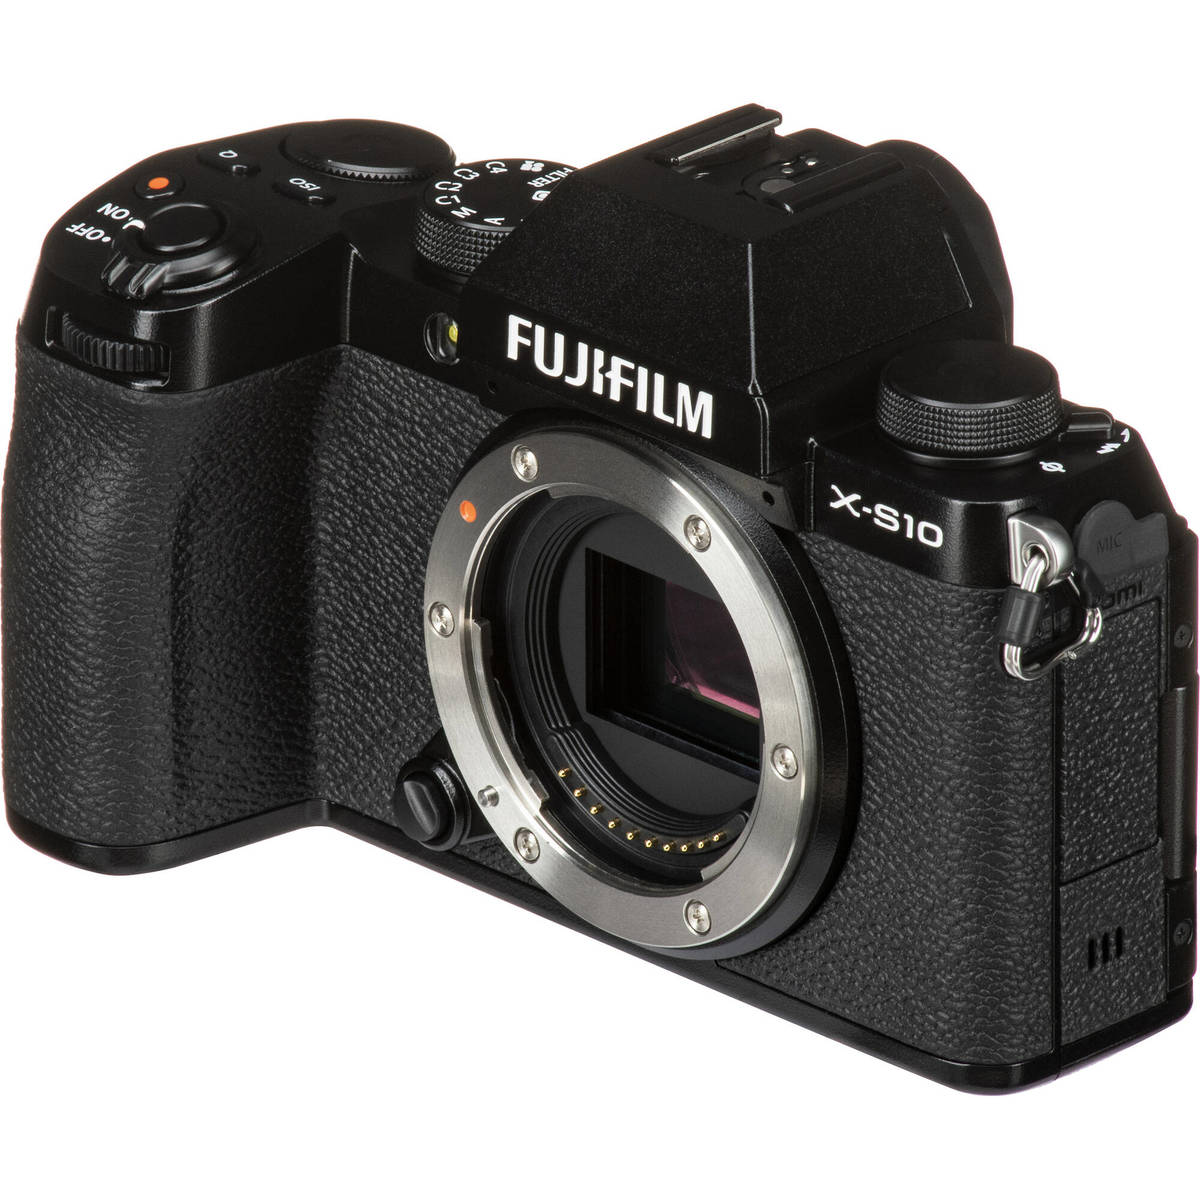 8. Fujifilm X-S10 kit (15-45)